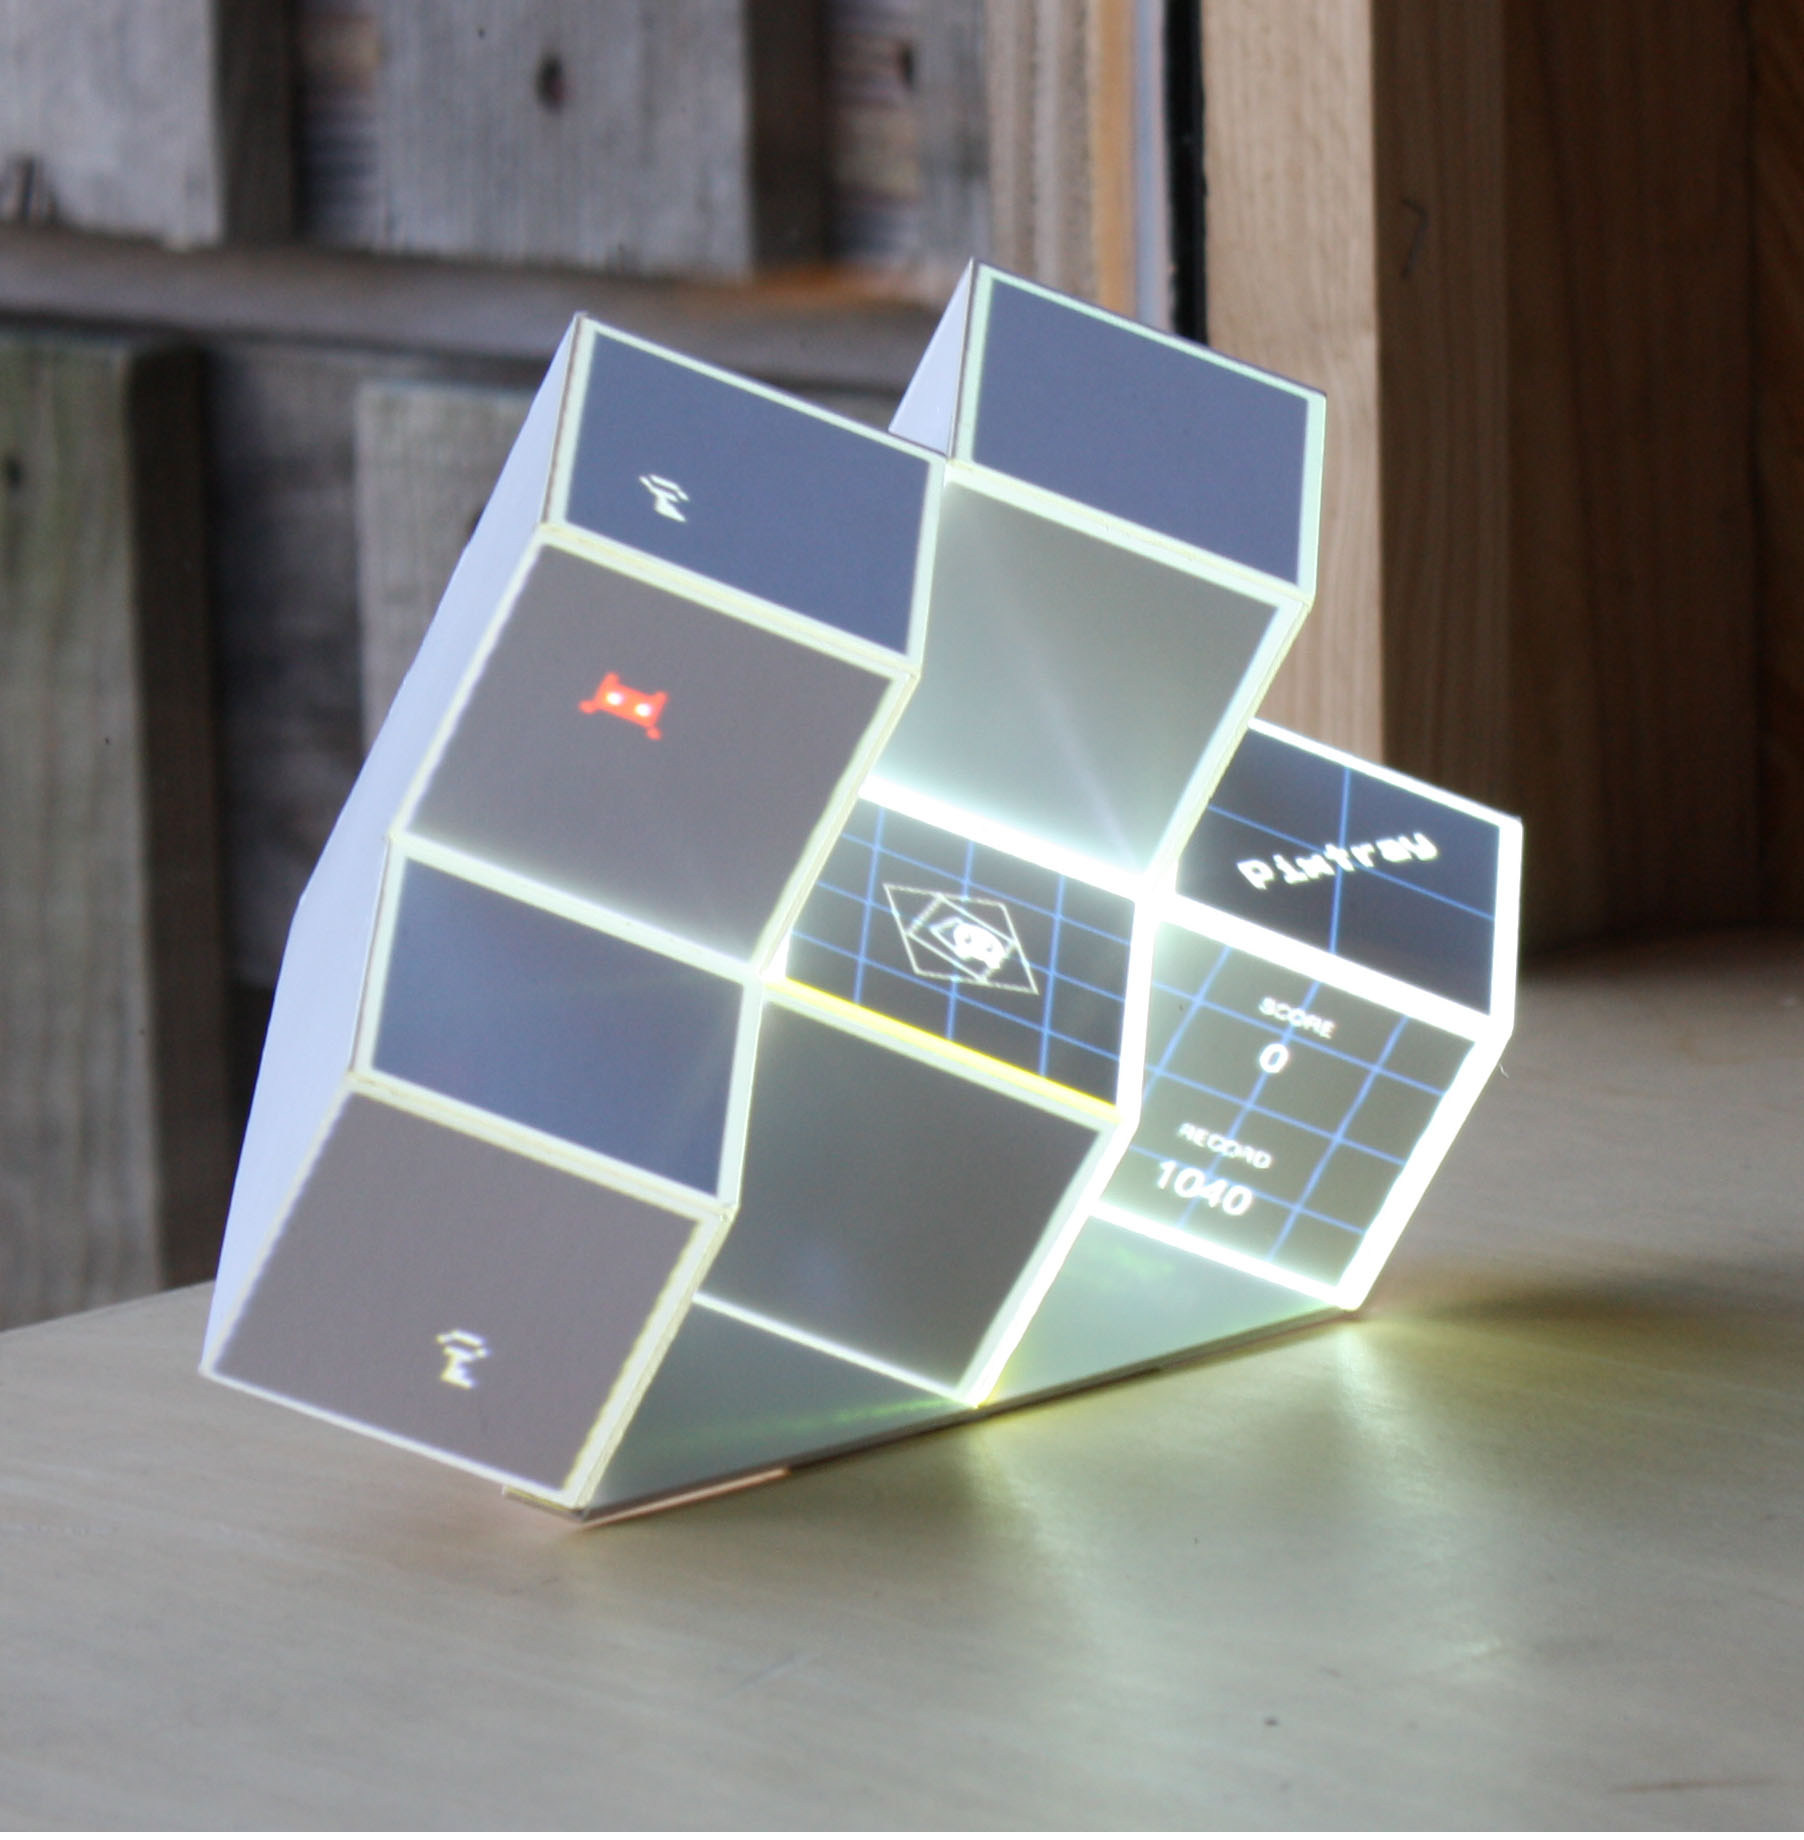 Le jeu Pixtray posé sur une table : un objet multicubique et lumineux.